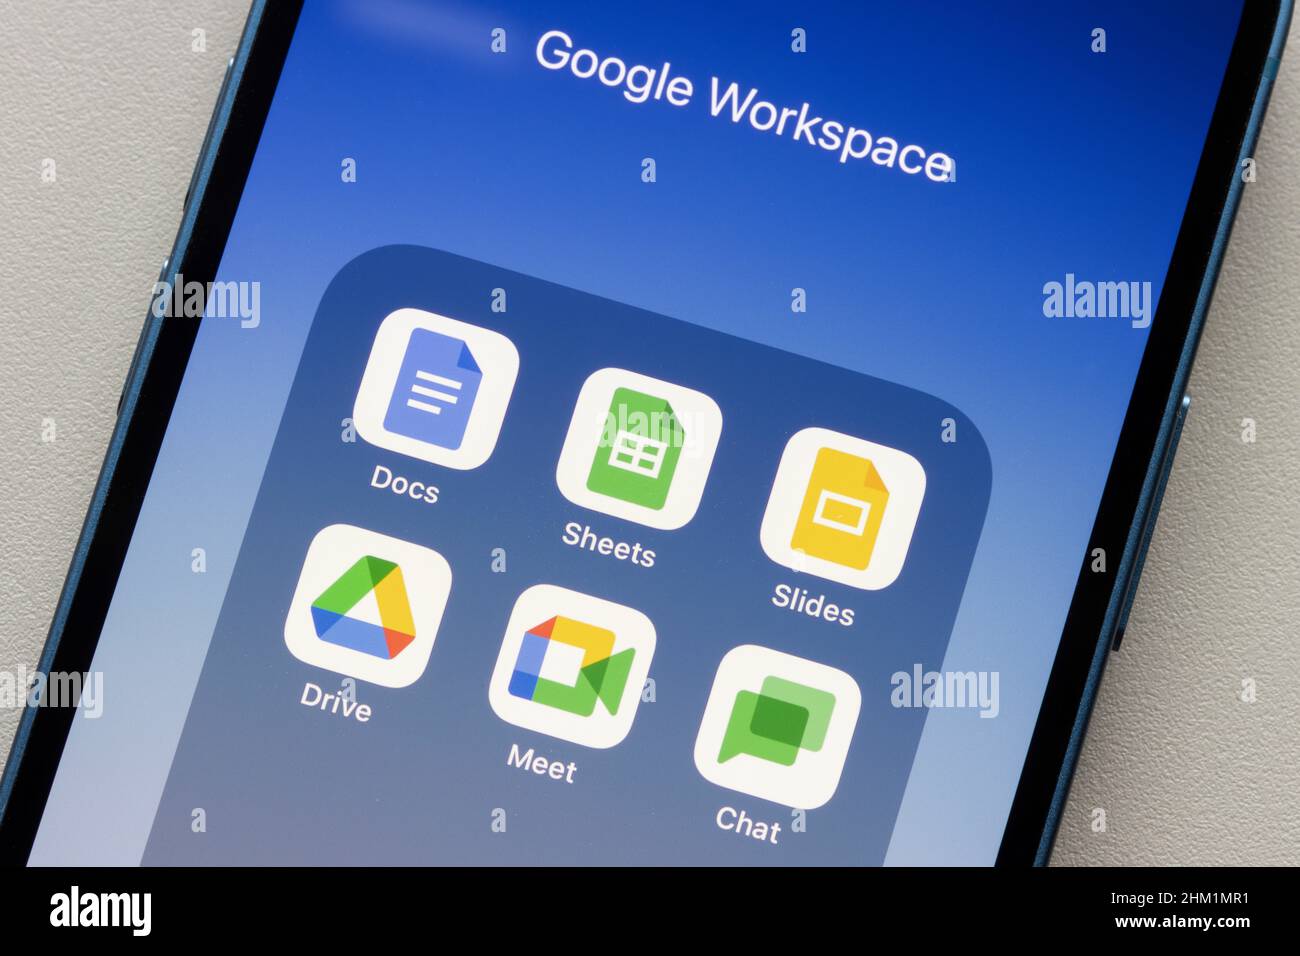 Die Google Workspace Essentials Starter App-Symbole werden am 4. Februar 2022 auf einem iPhone angezeigt. Google führt eine kostenlose Workspace-Stufe für Unternehmen ein... Stockfoto